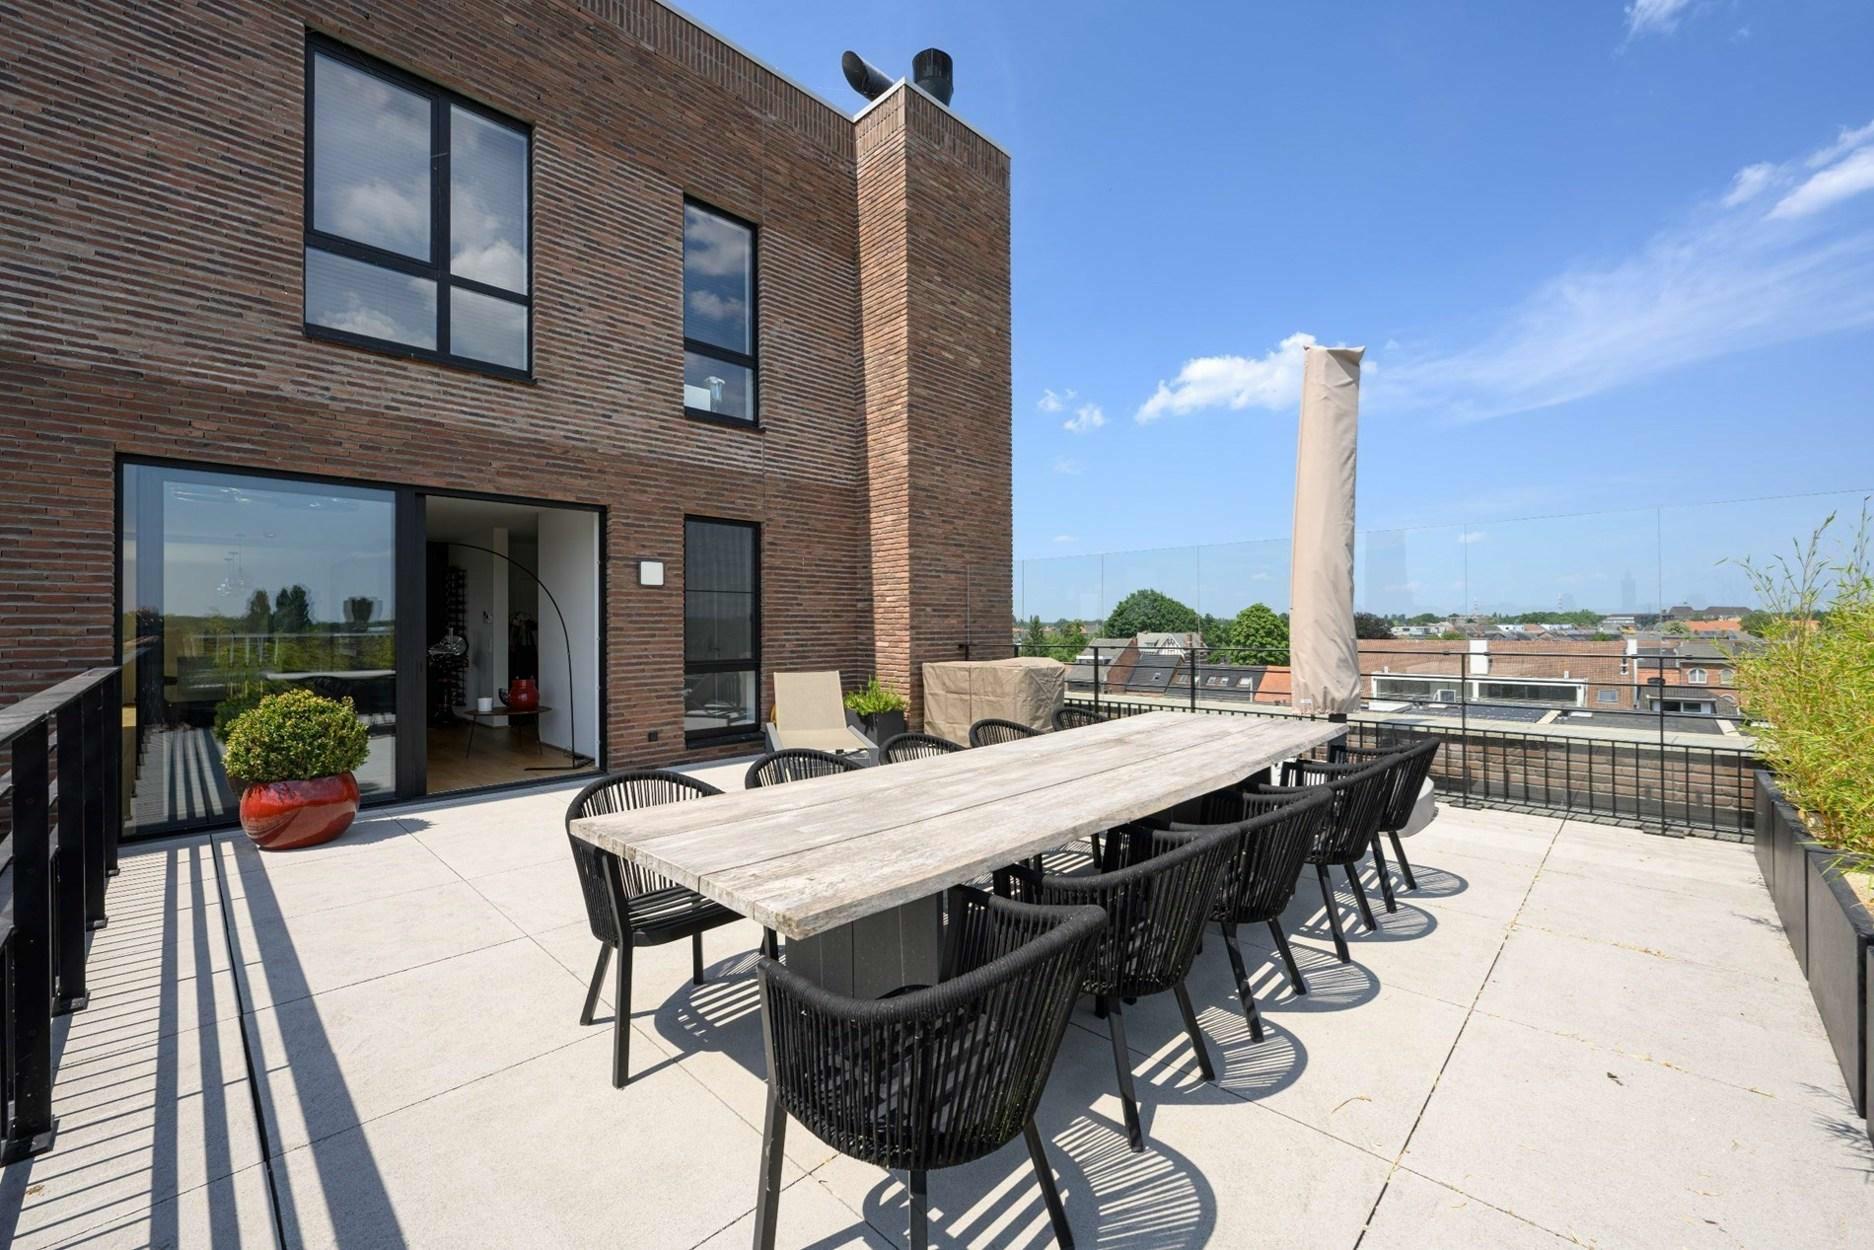 Exclusief appartement met een bewoonbare oppervlakte van 191m², ruime terrassen te Hasselt.